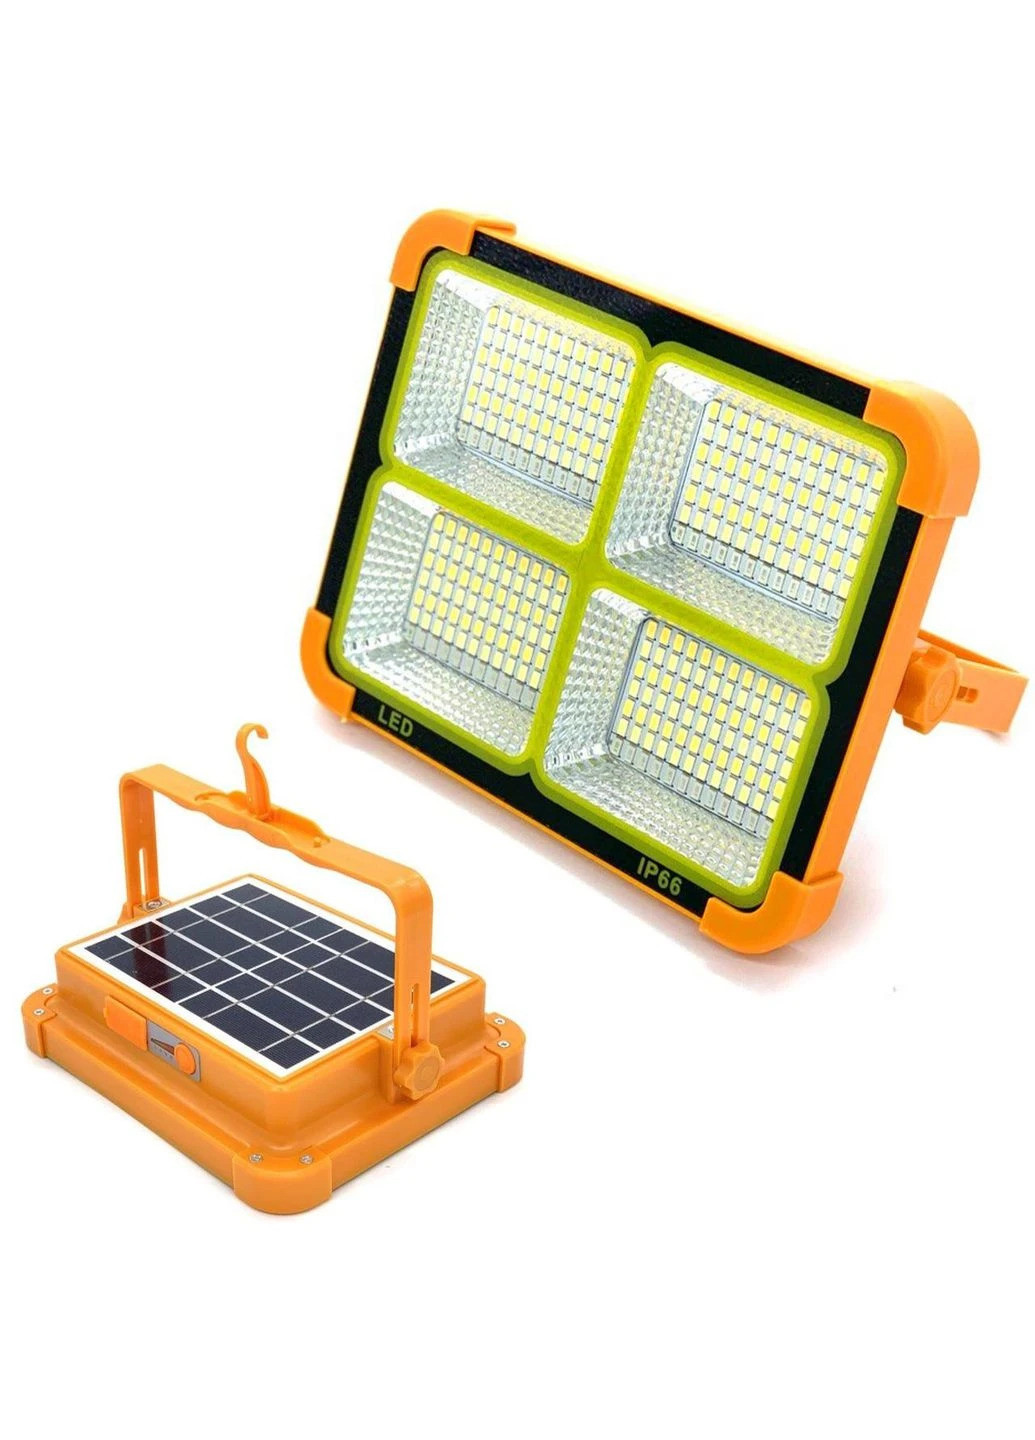 Солнечная батарея SolarPanel 5+ Updated универсальная солнечная батарея BioLite